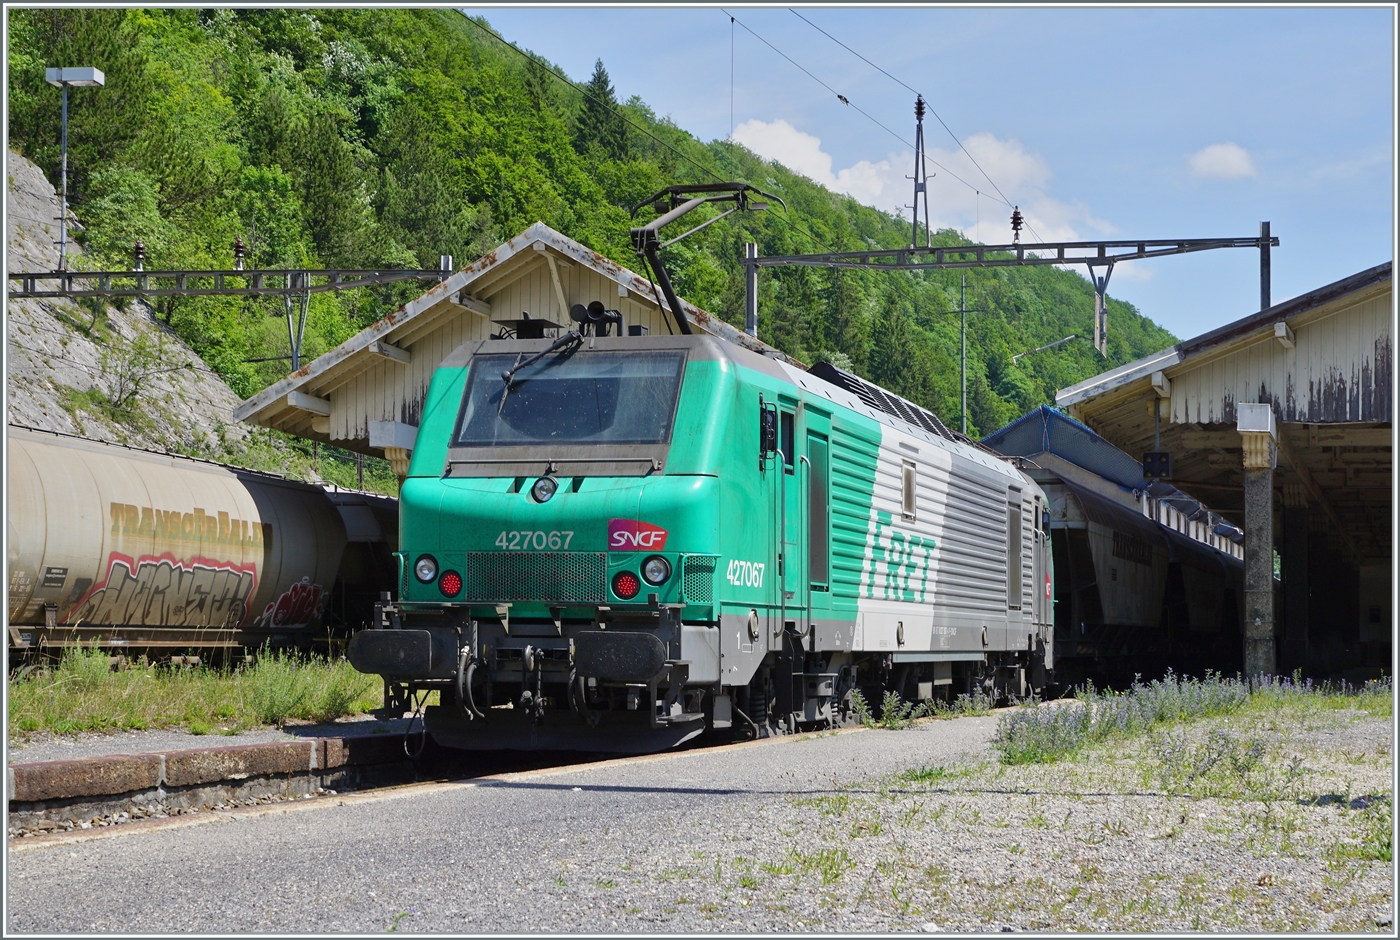 Die SNCF BB 27067 hat den im Hintergrund (links im Bild) zu sehenden  Spaghetti -Zug nachgeschoben und macht sich nun bereit in Vallorbe den Gegenzug zu übernehmen, wobei ihr in der Folge dann noch eine Vorspannlok beigestellt wird.

16. Juni 2022